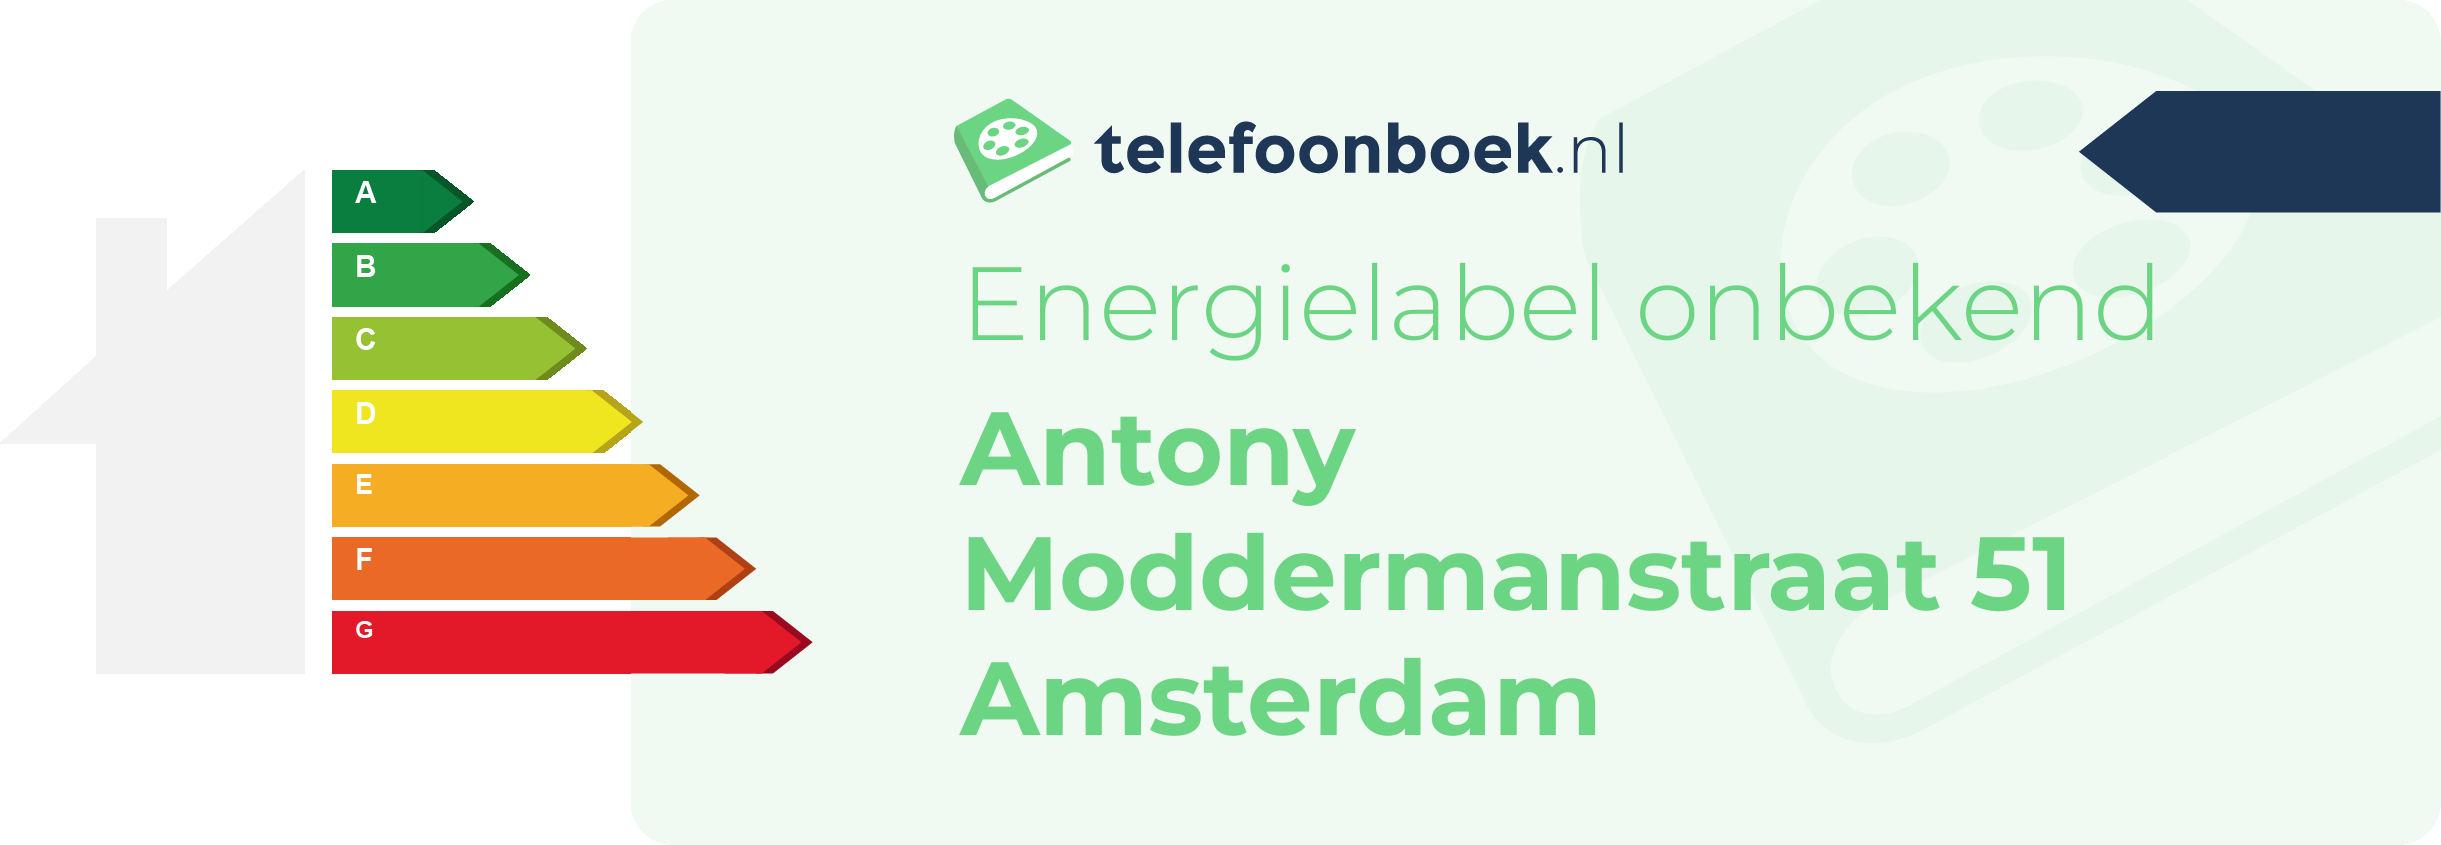 Energielabel Antony Moddermanstraat 51 Amsterdam